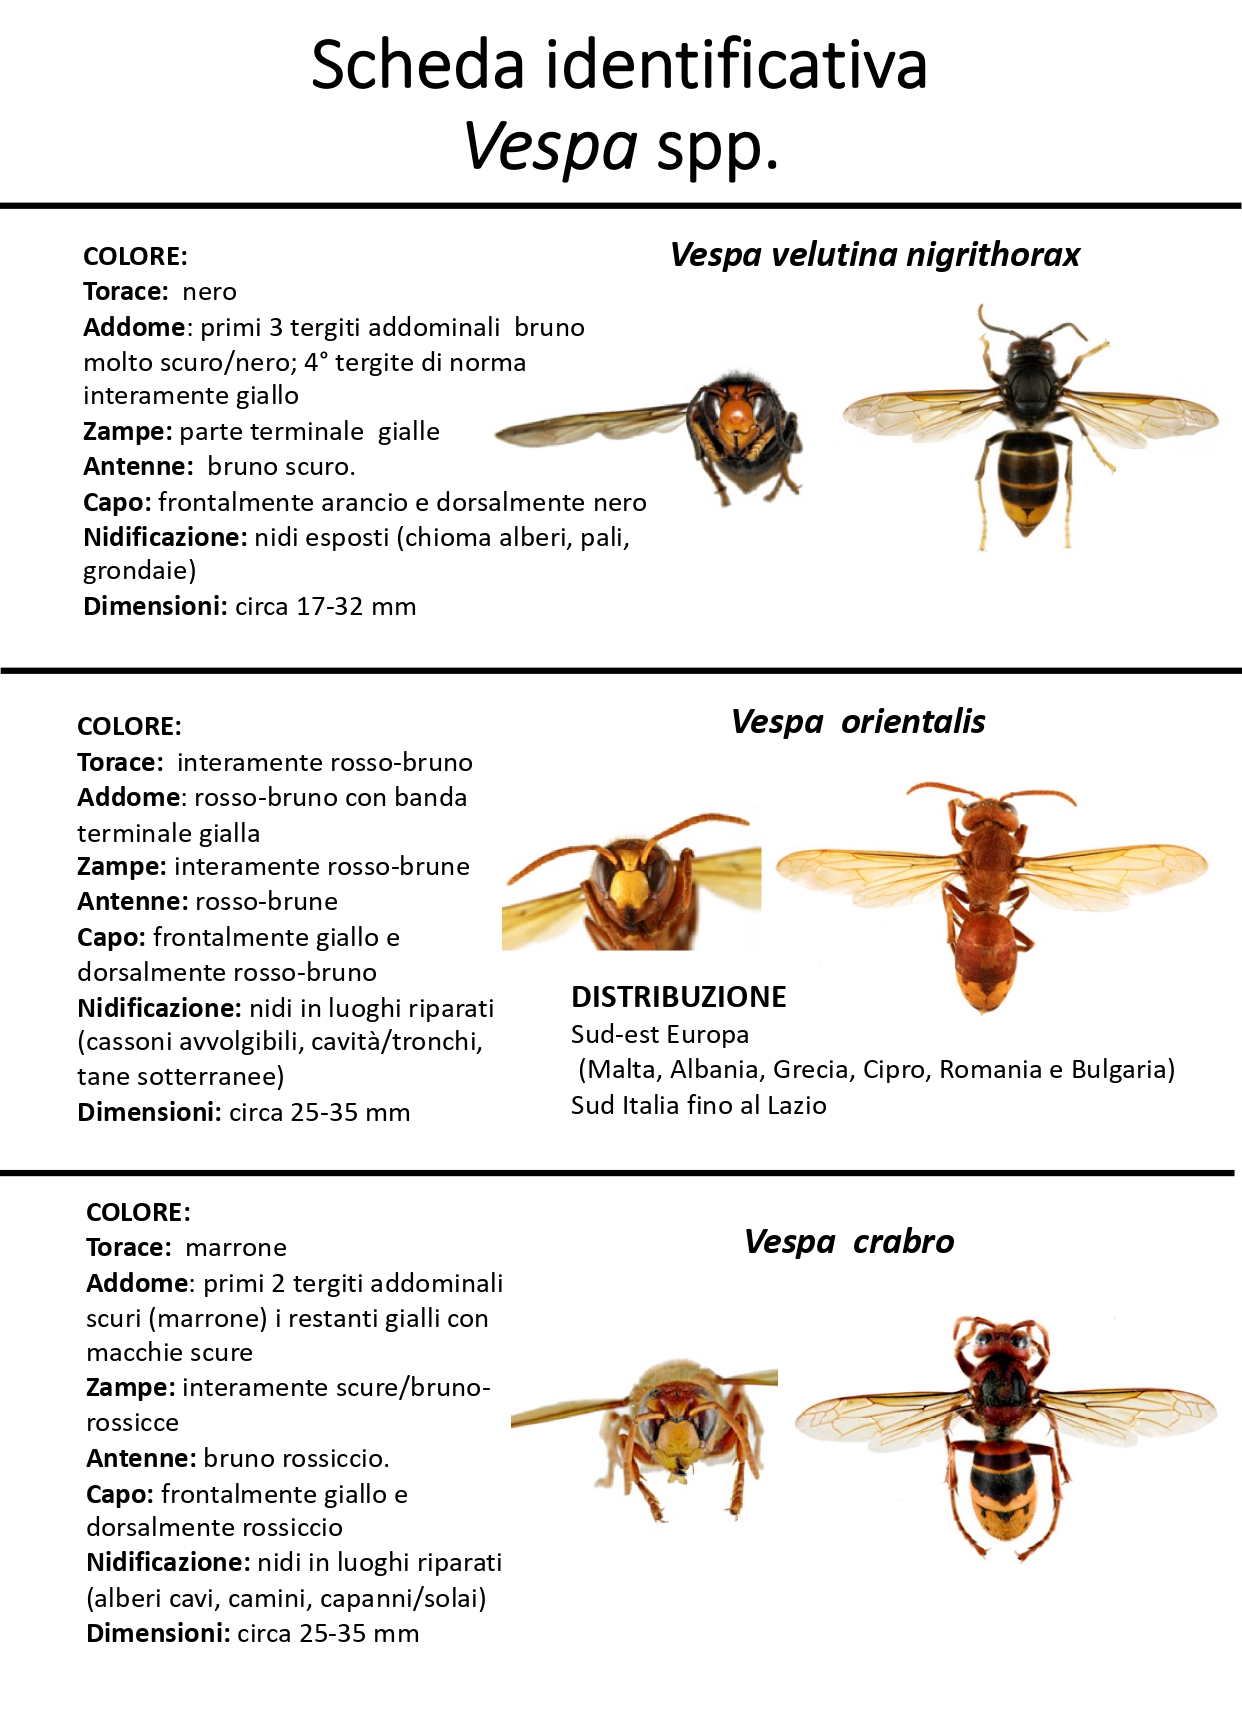 scheda  vespa orientalis page-0001